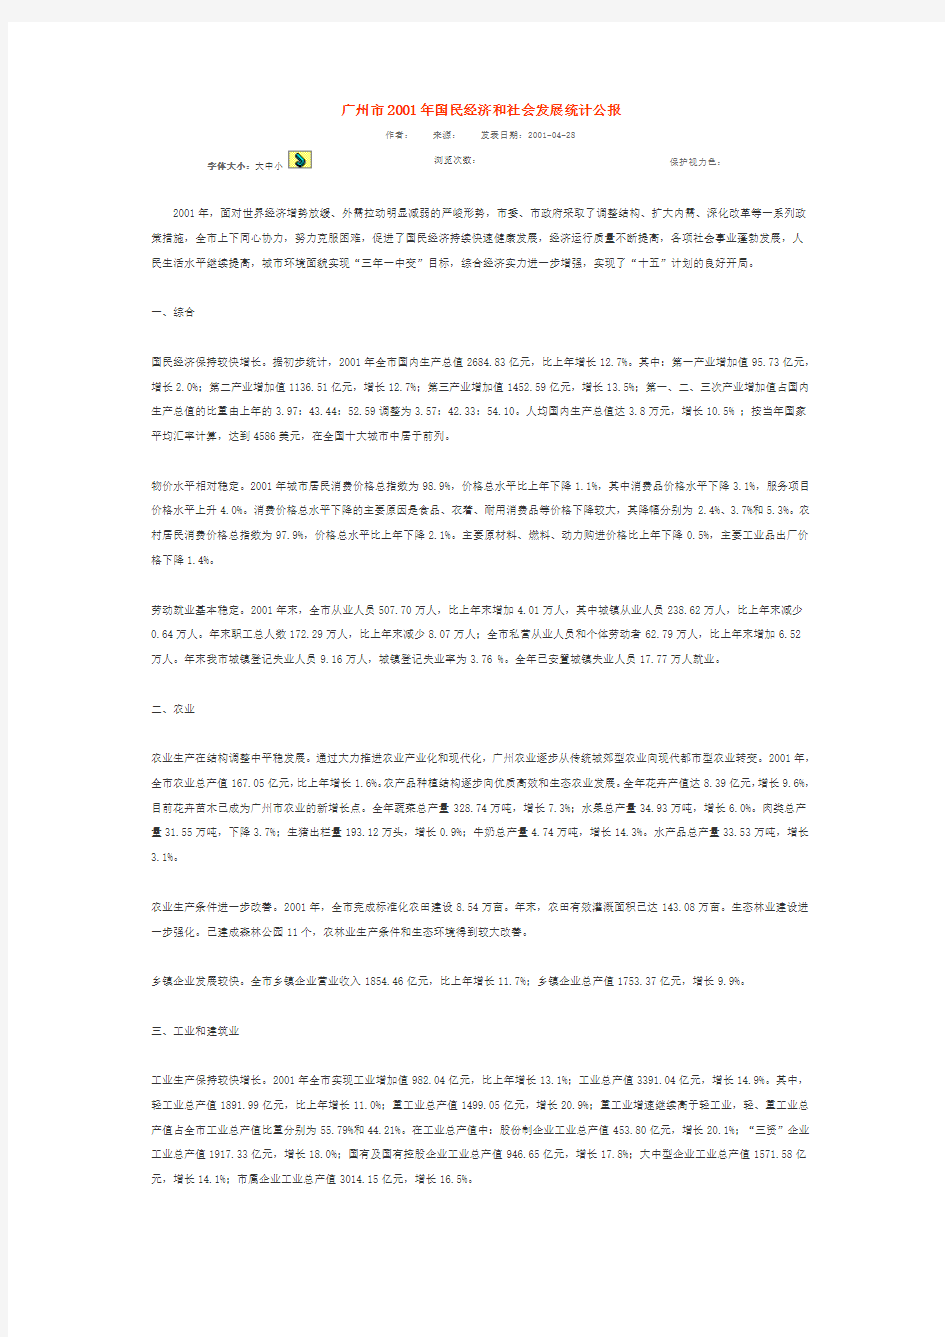 广州市2001年国民经济和社会发展统计公报